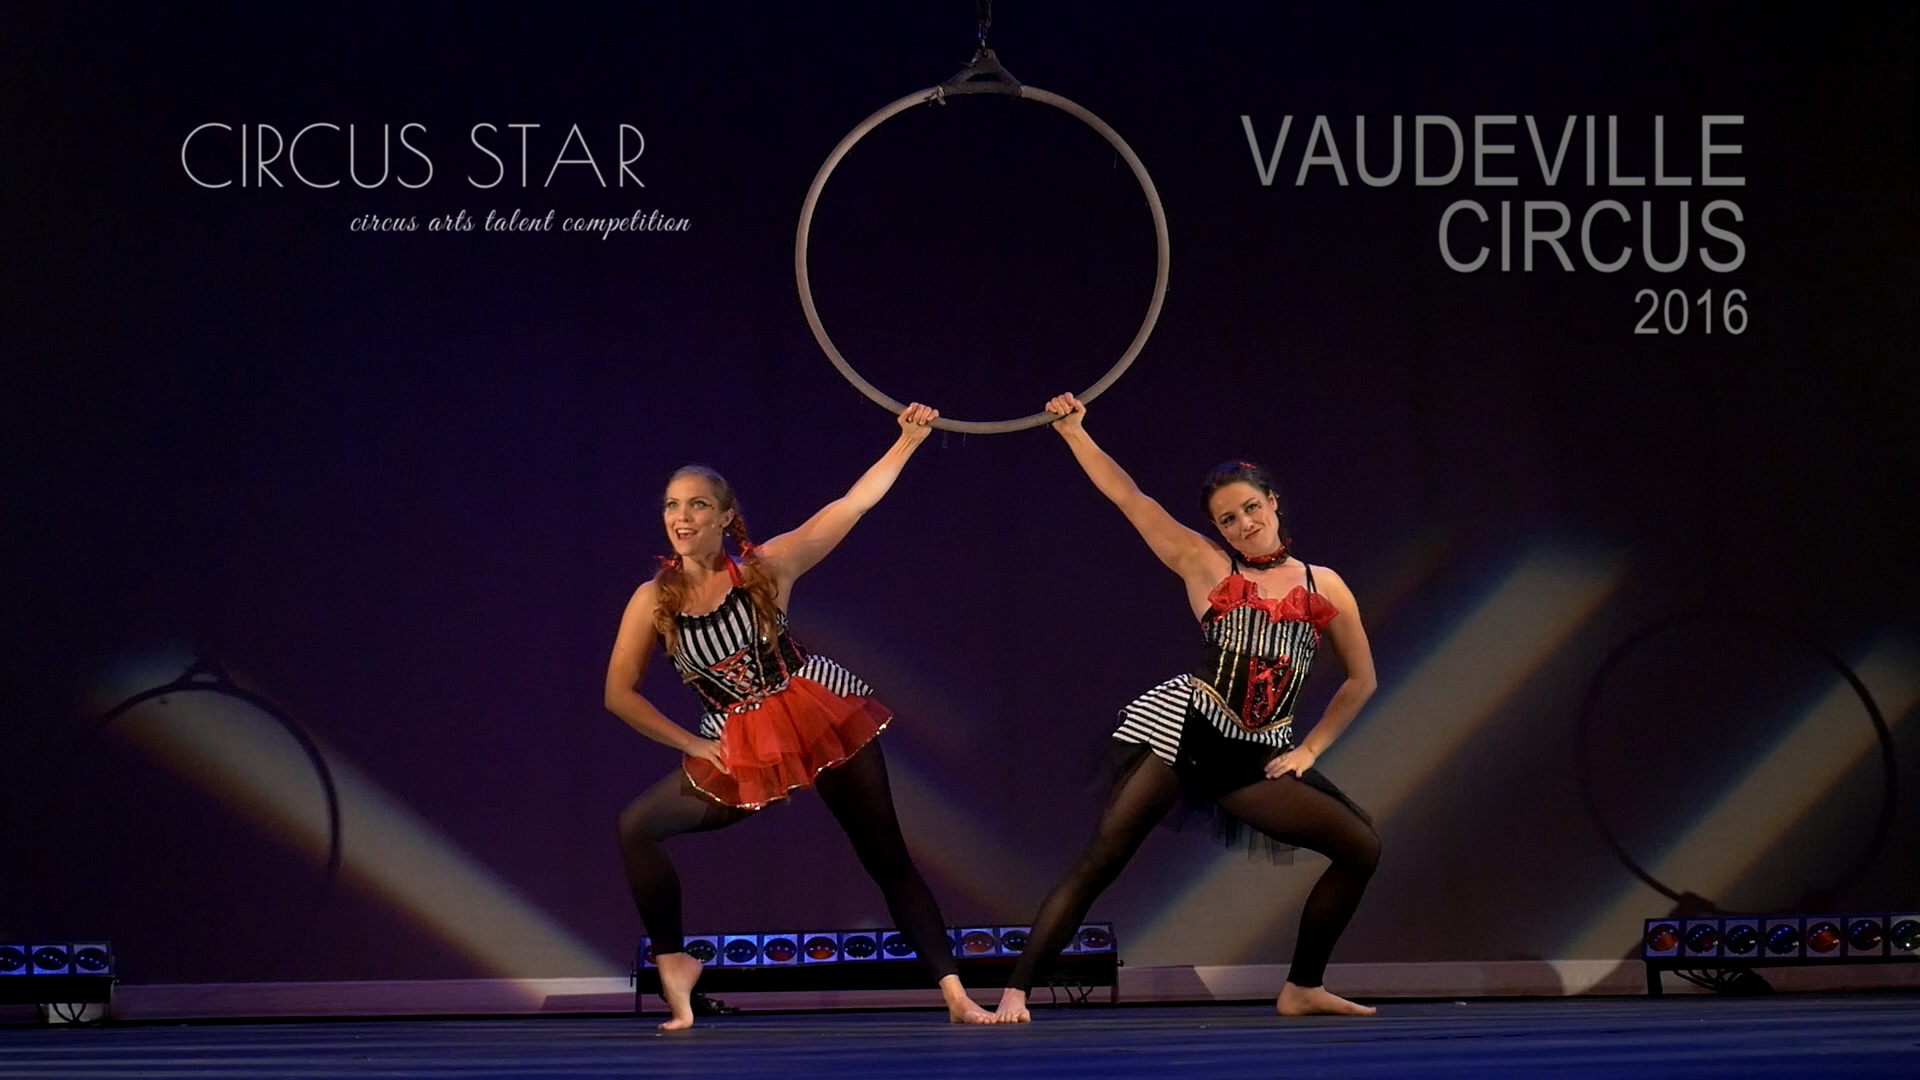 Vaudeville Circus, Circus Star USA 2016 performers